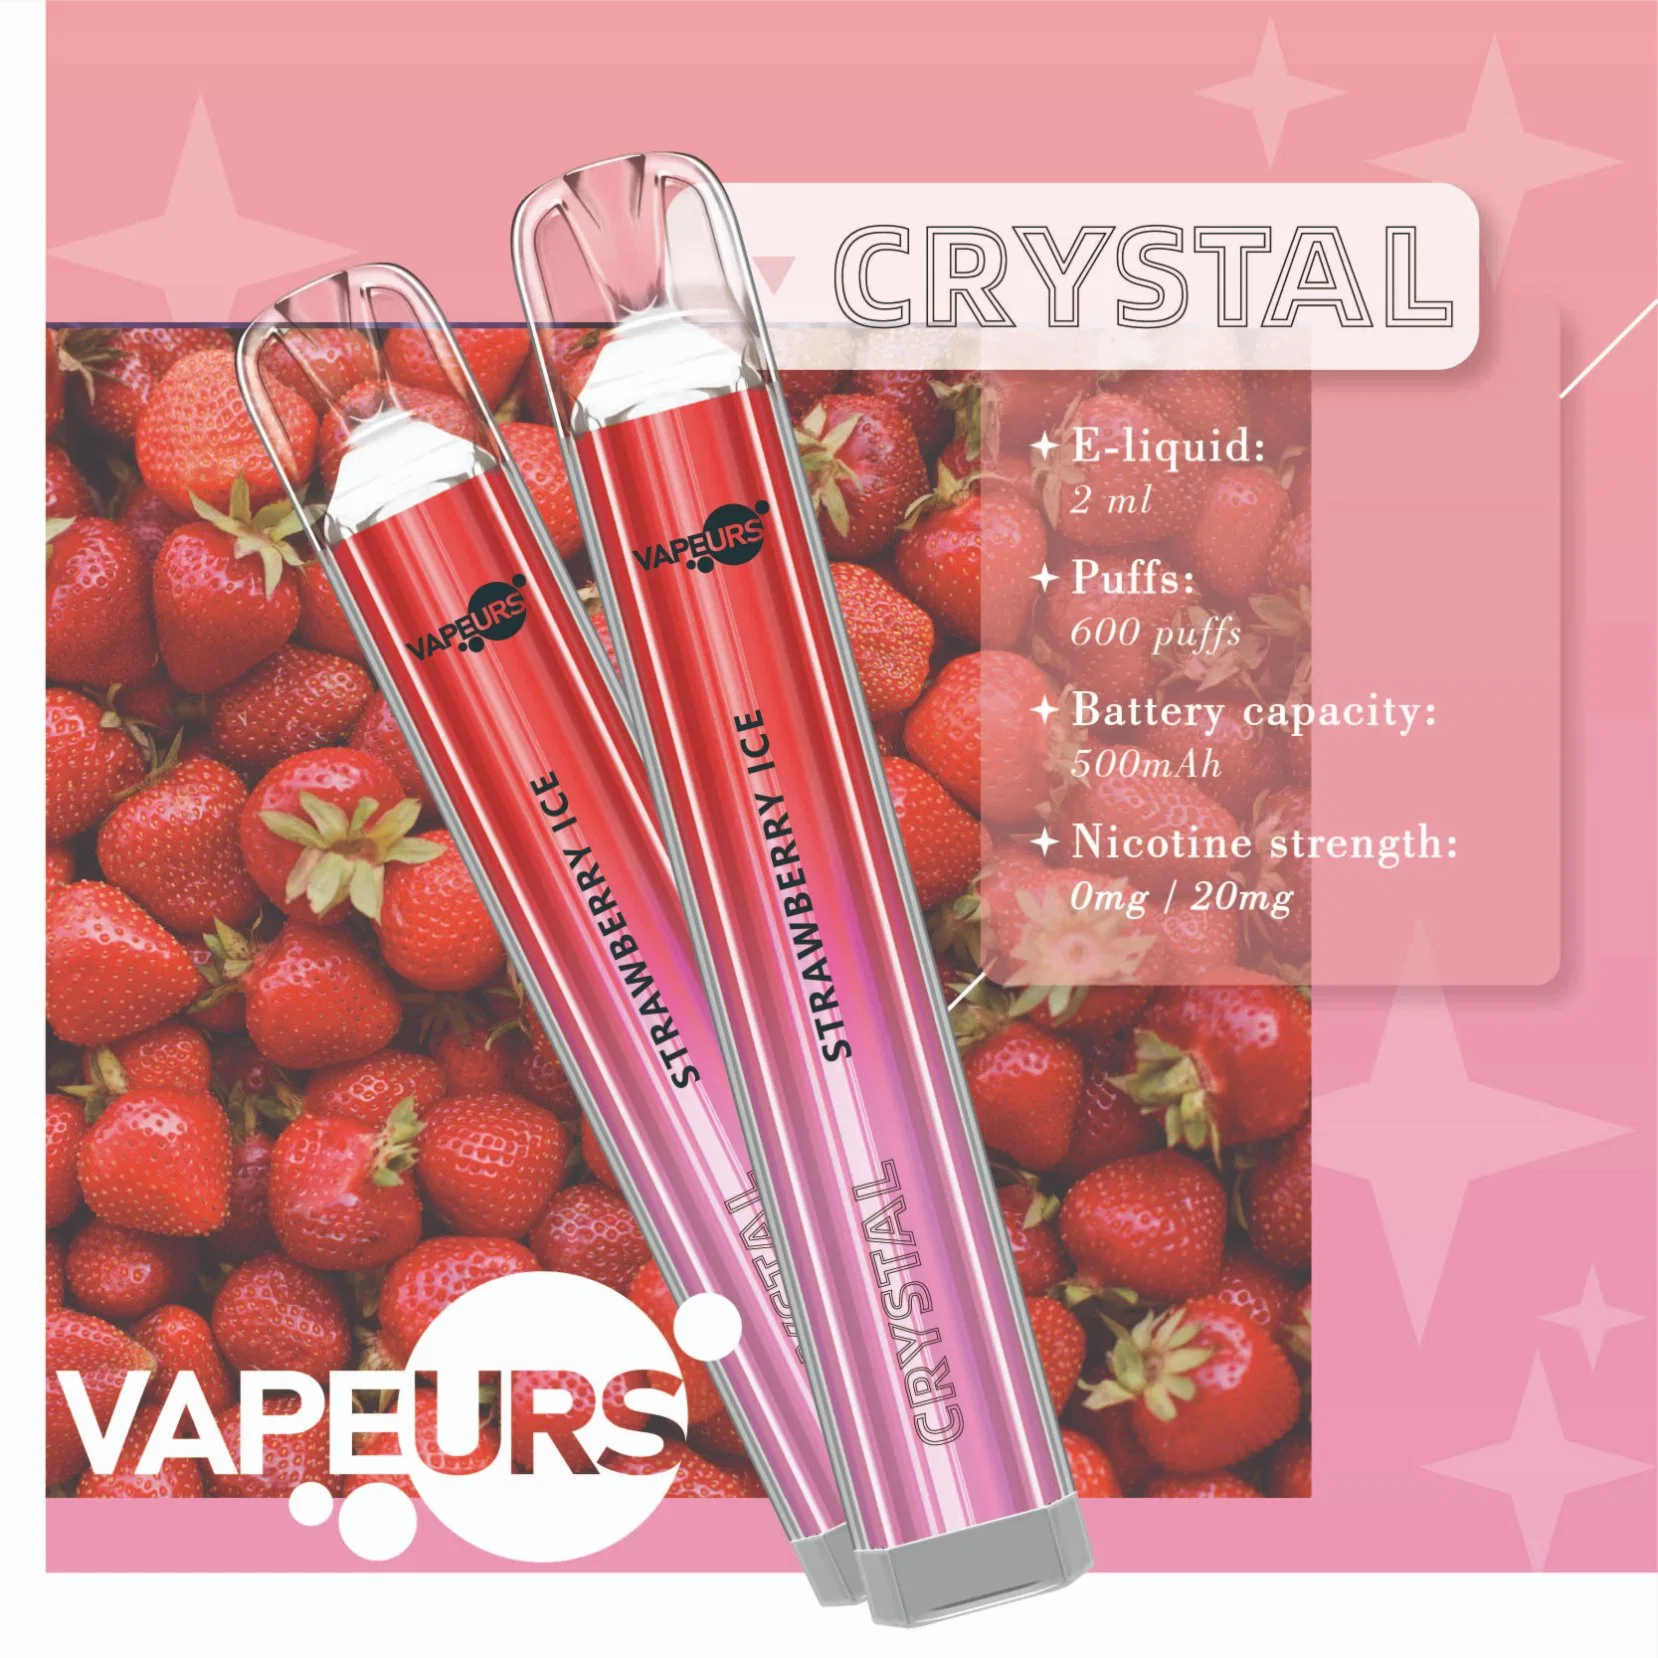 Vapeurs Crystal 600 Puffs Disposable Vape Pen Smoking Pipe Hookah Electronic Cigarette